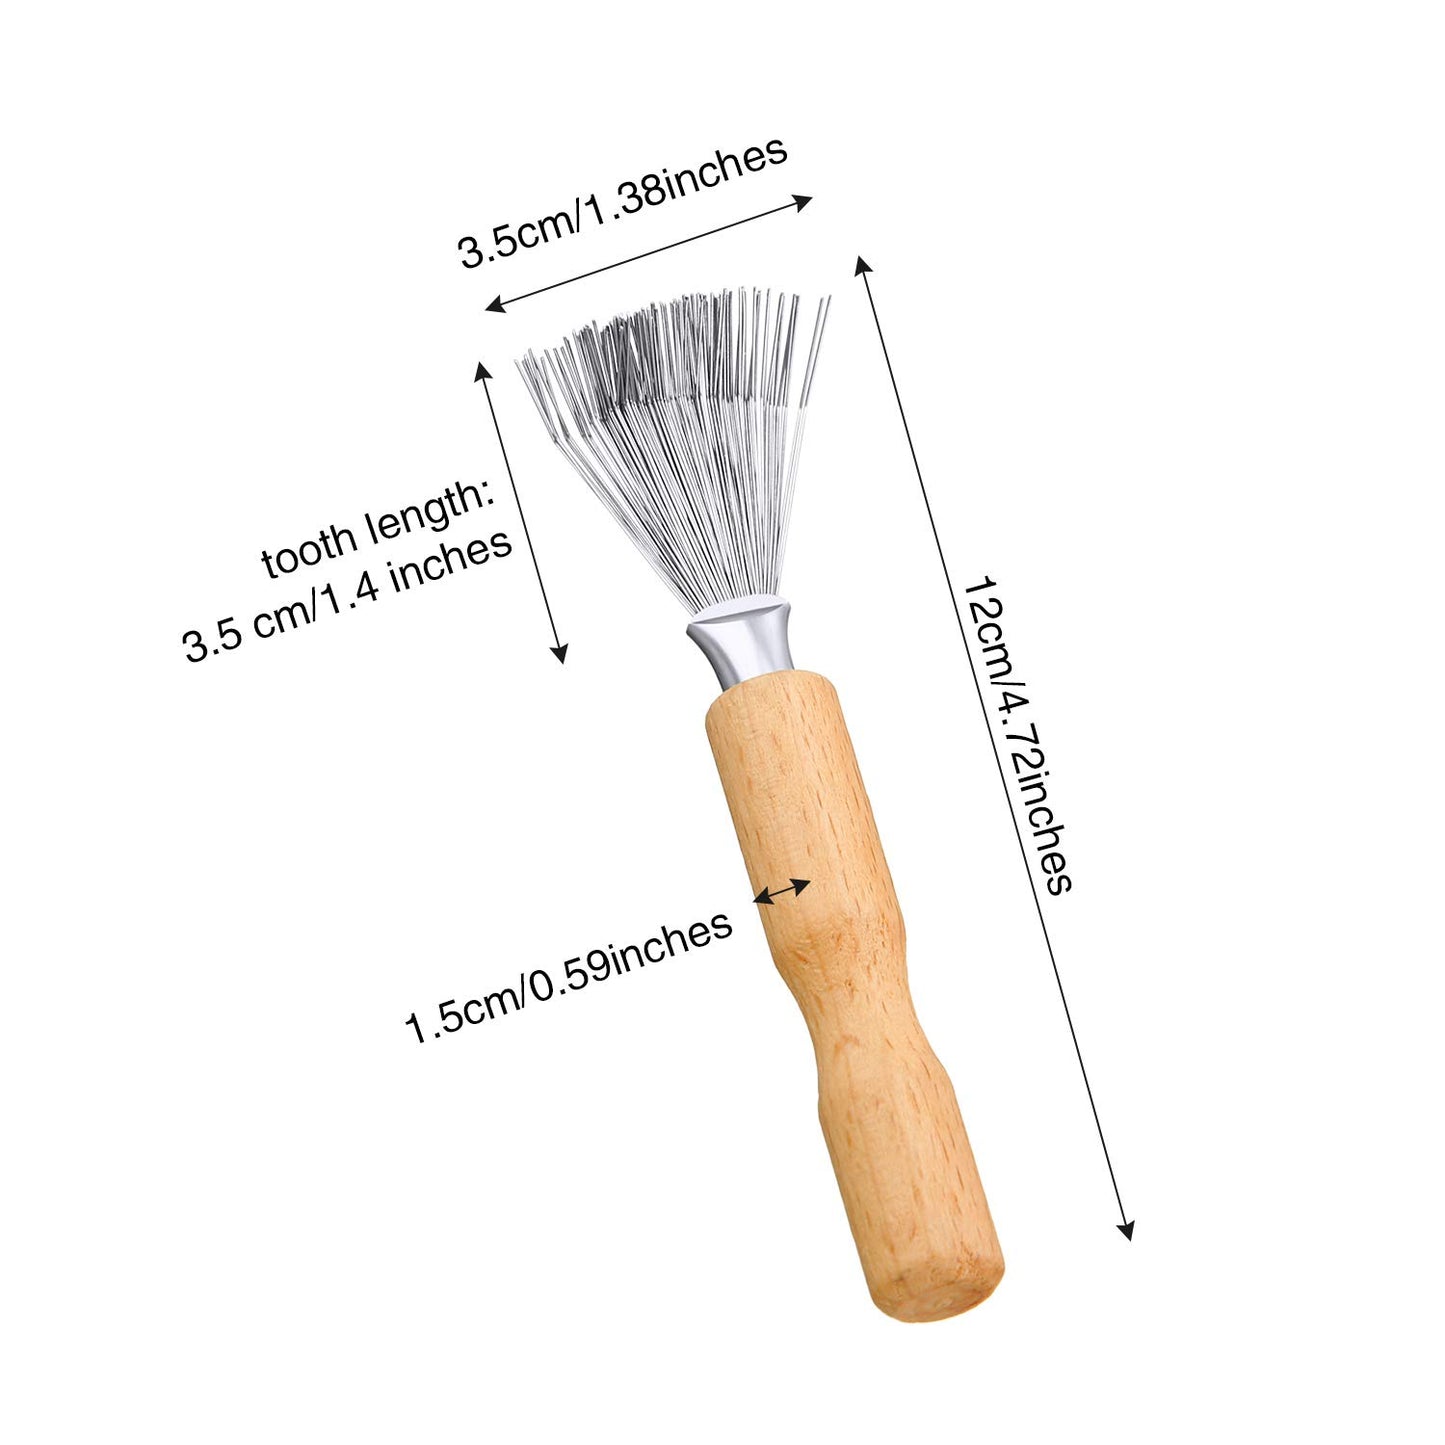 Hair Brush Cleaner Tool